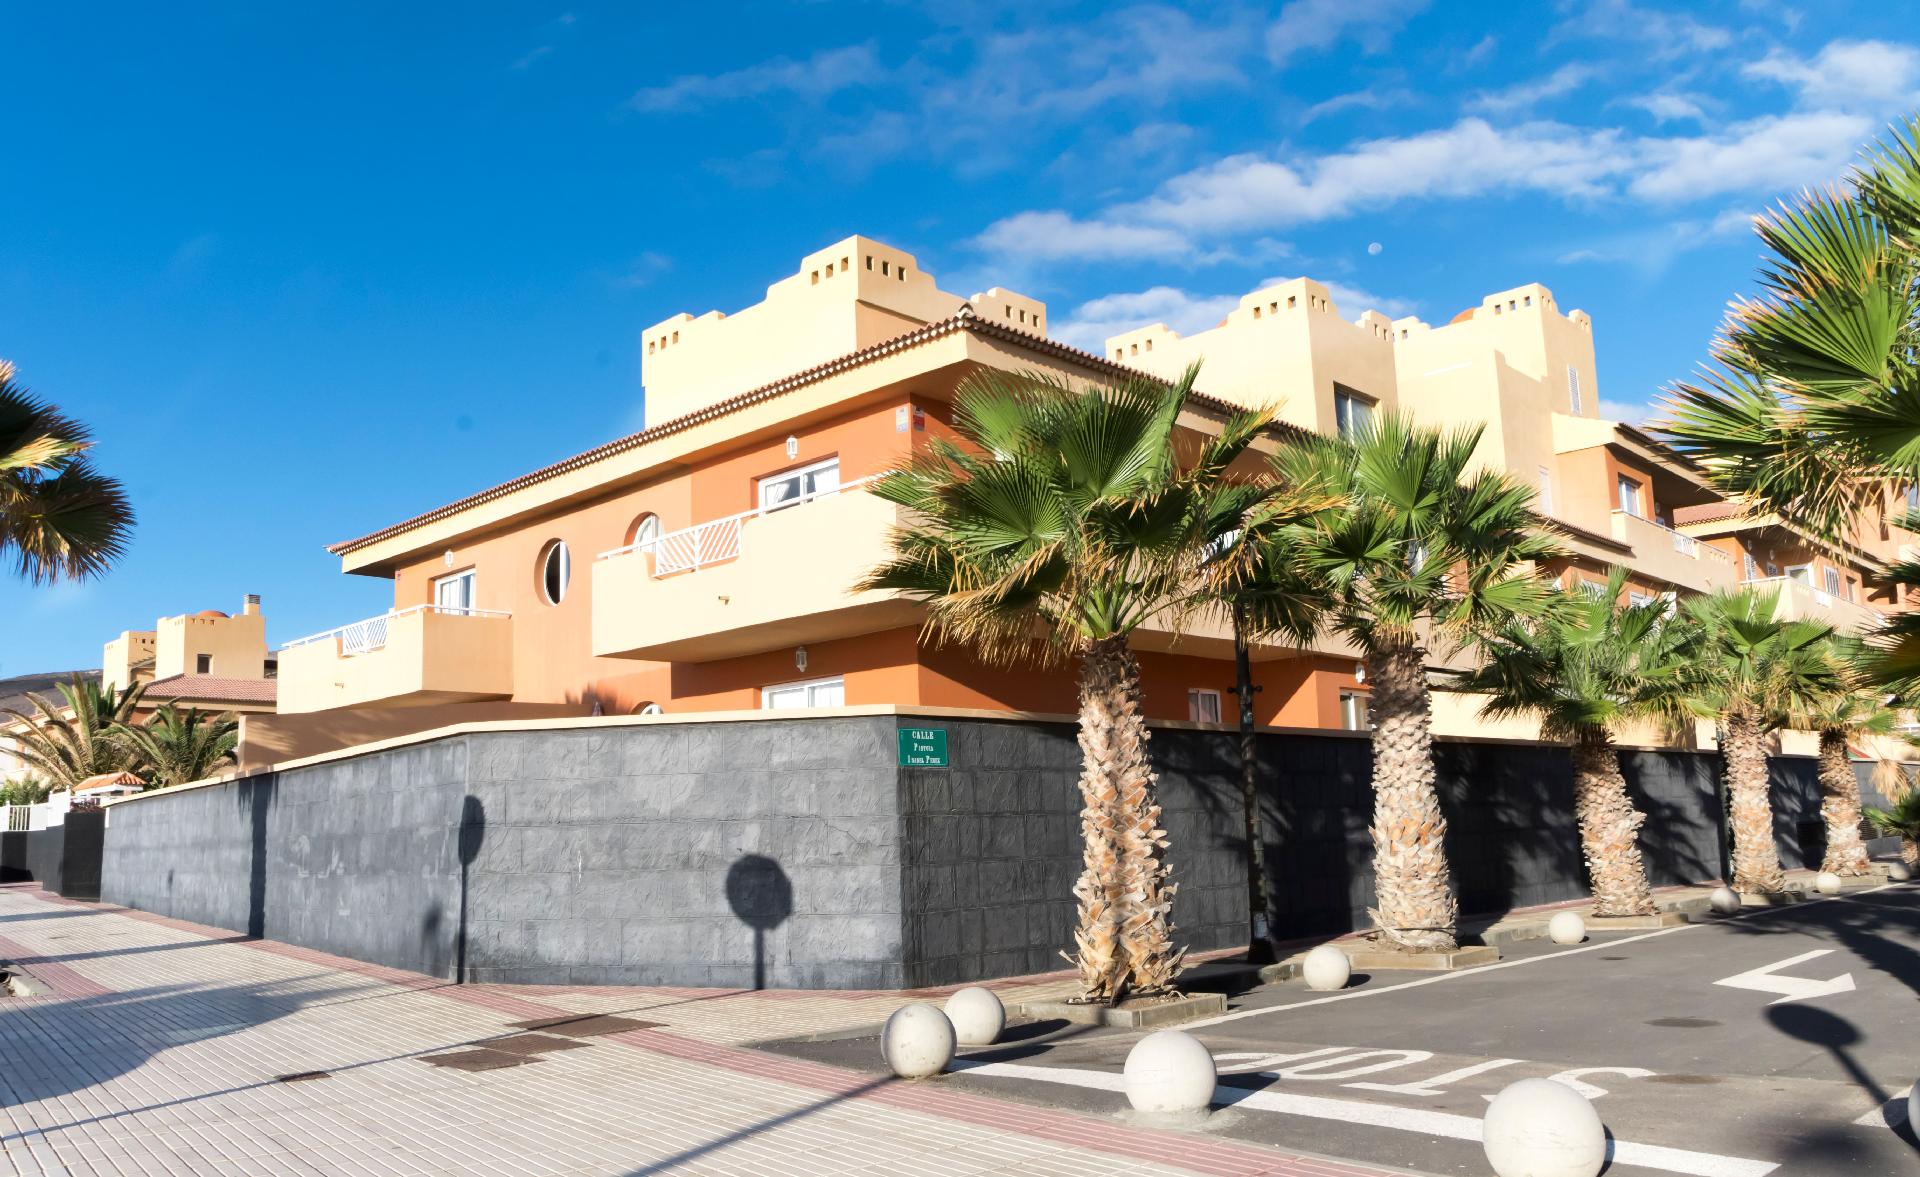 Ferienwohnung für 4 Personen ca. 70 m² i Ferienwohnung in Spanien